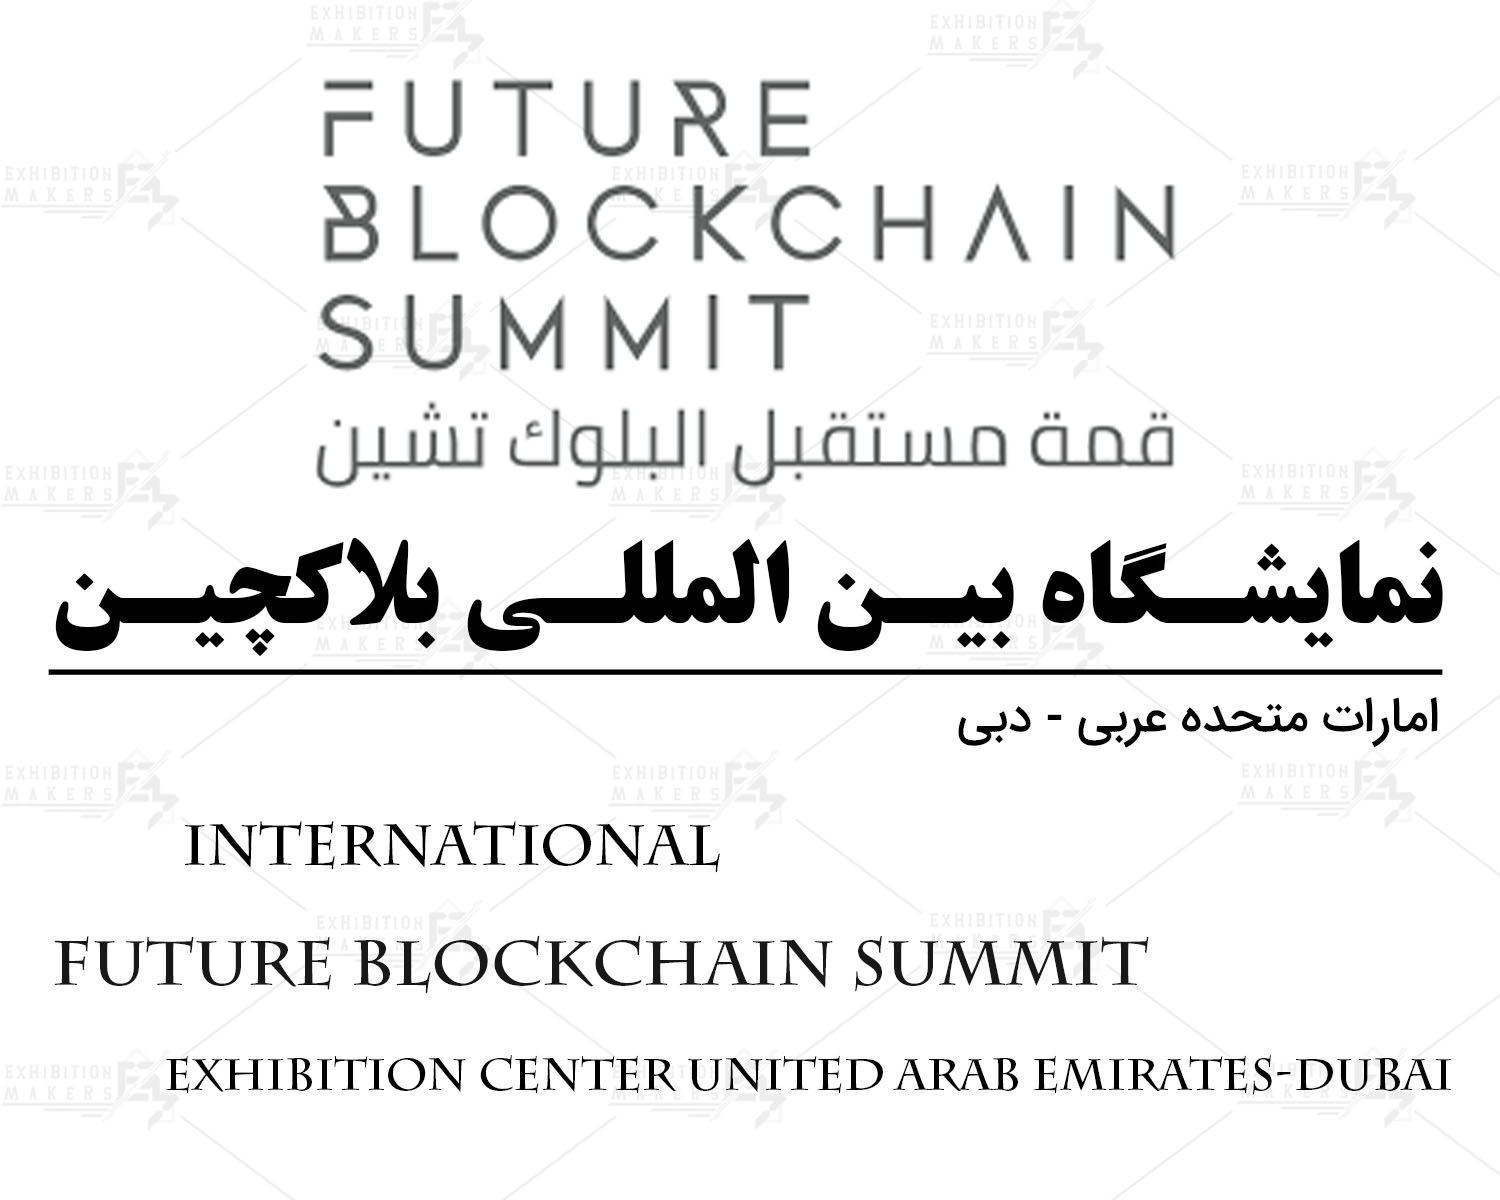 نمایشگاه بین المللی بلاکچین امارات متحده عربی- دبی